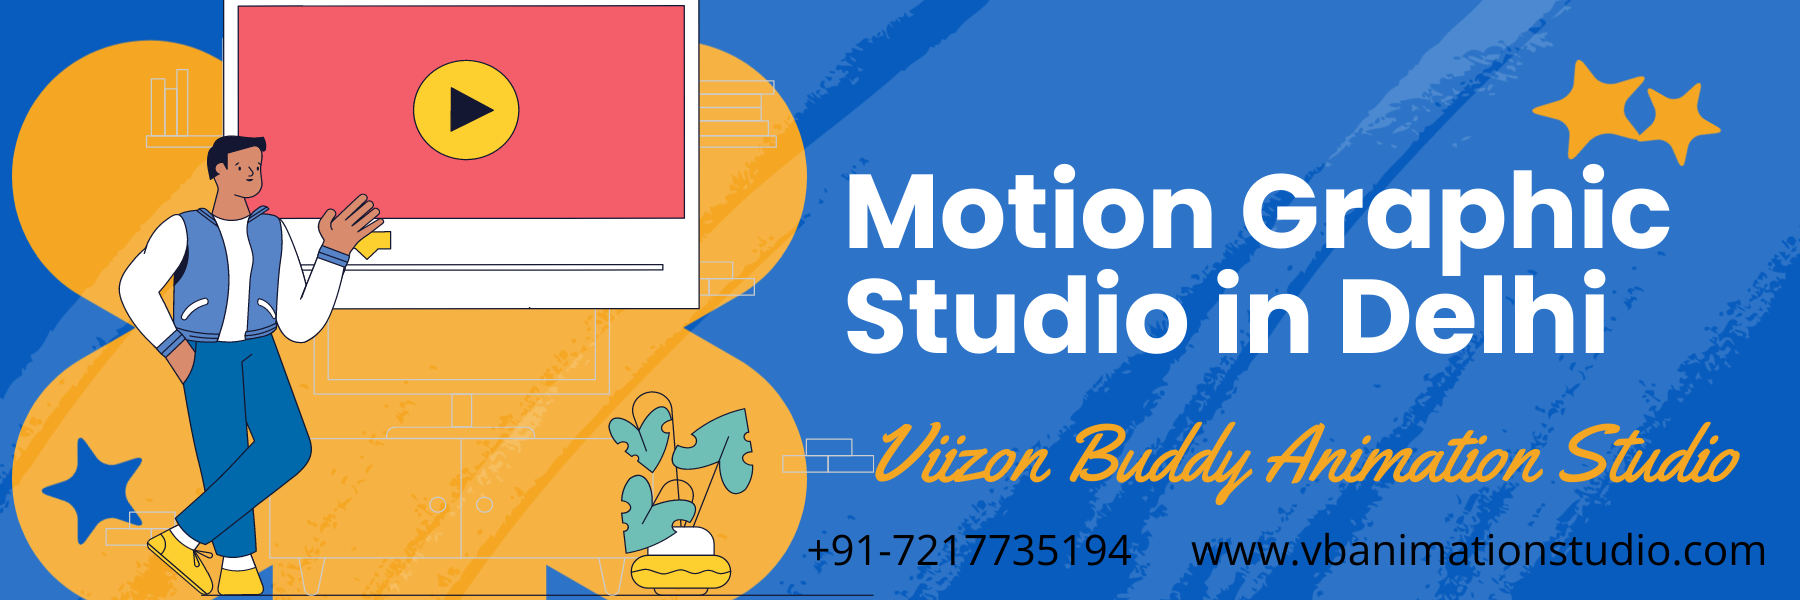 Motion Graphic Studio in Delhi